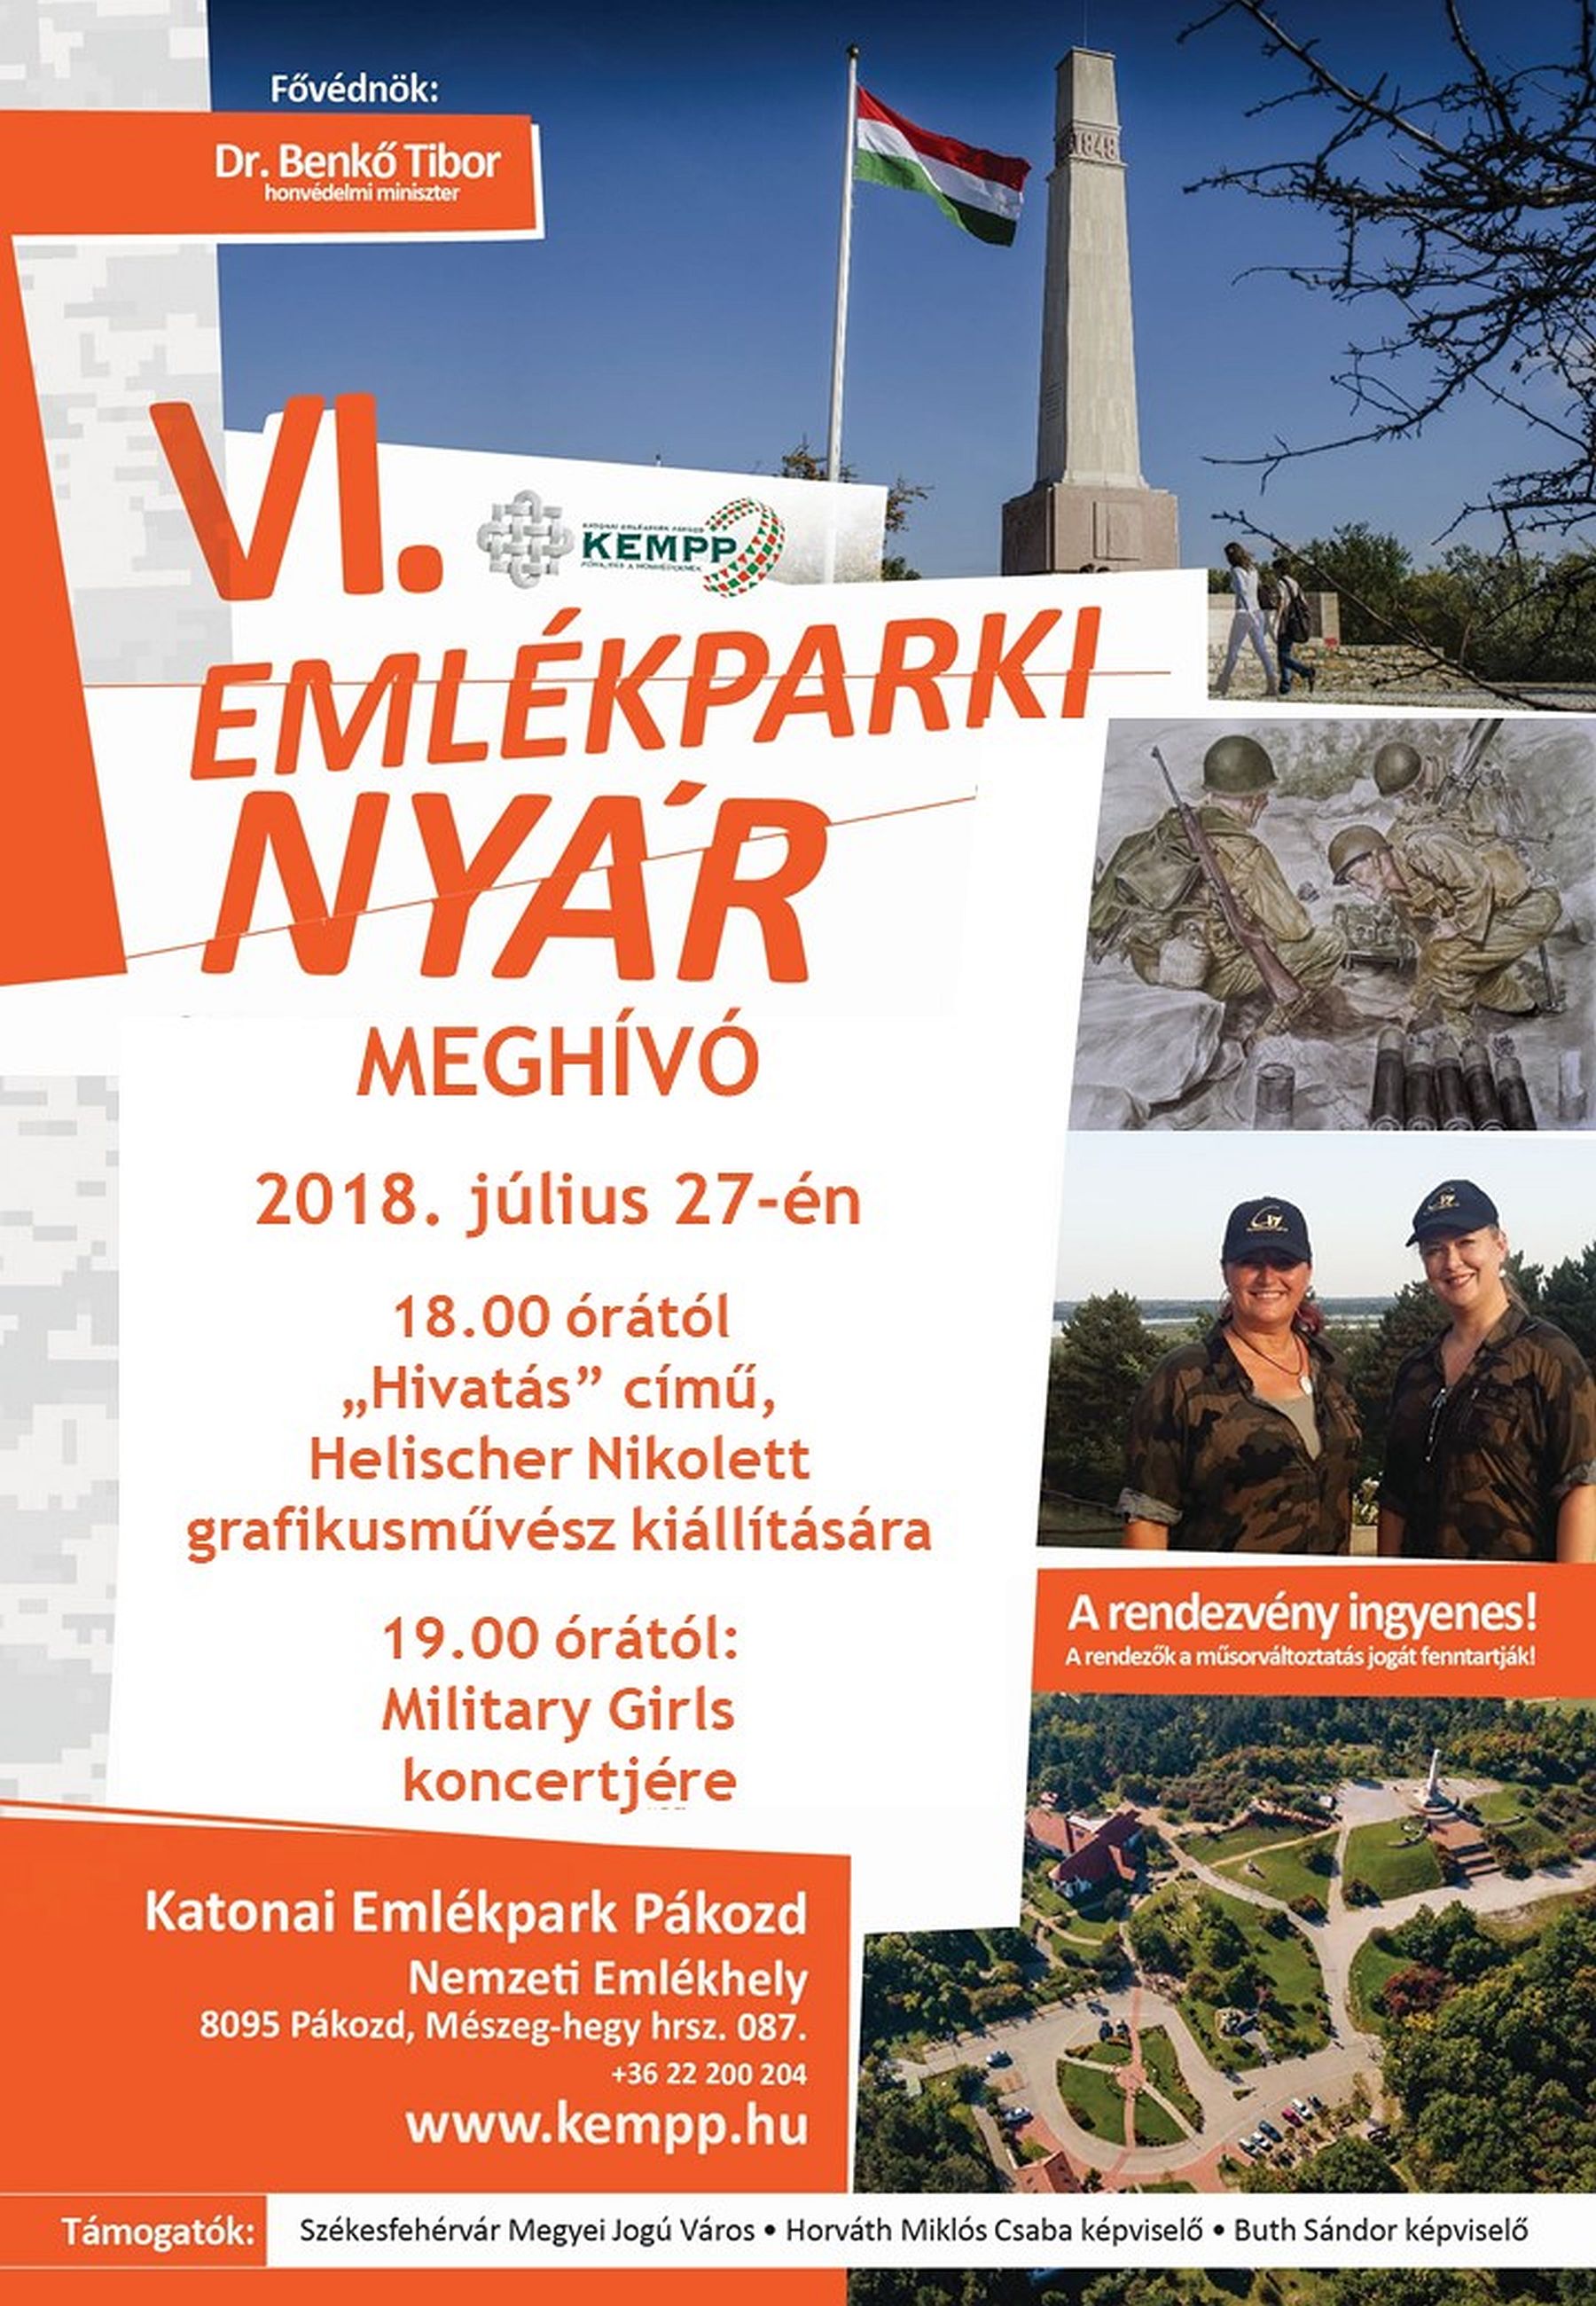 Helischer Nikolett tárlata és a Military Girls koncertje az Emlékparki nyár műsorán